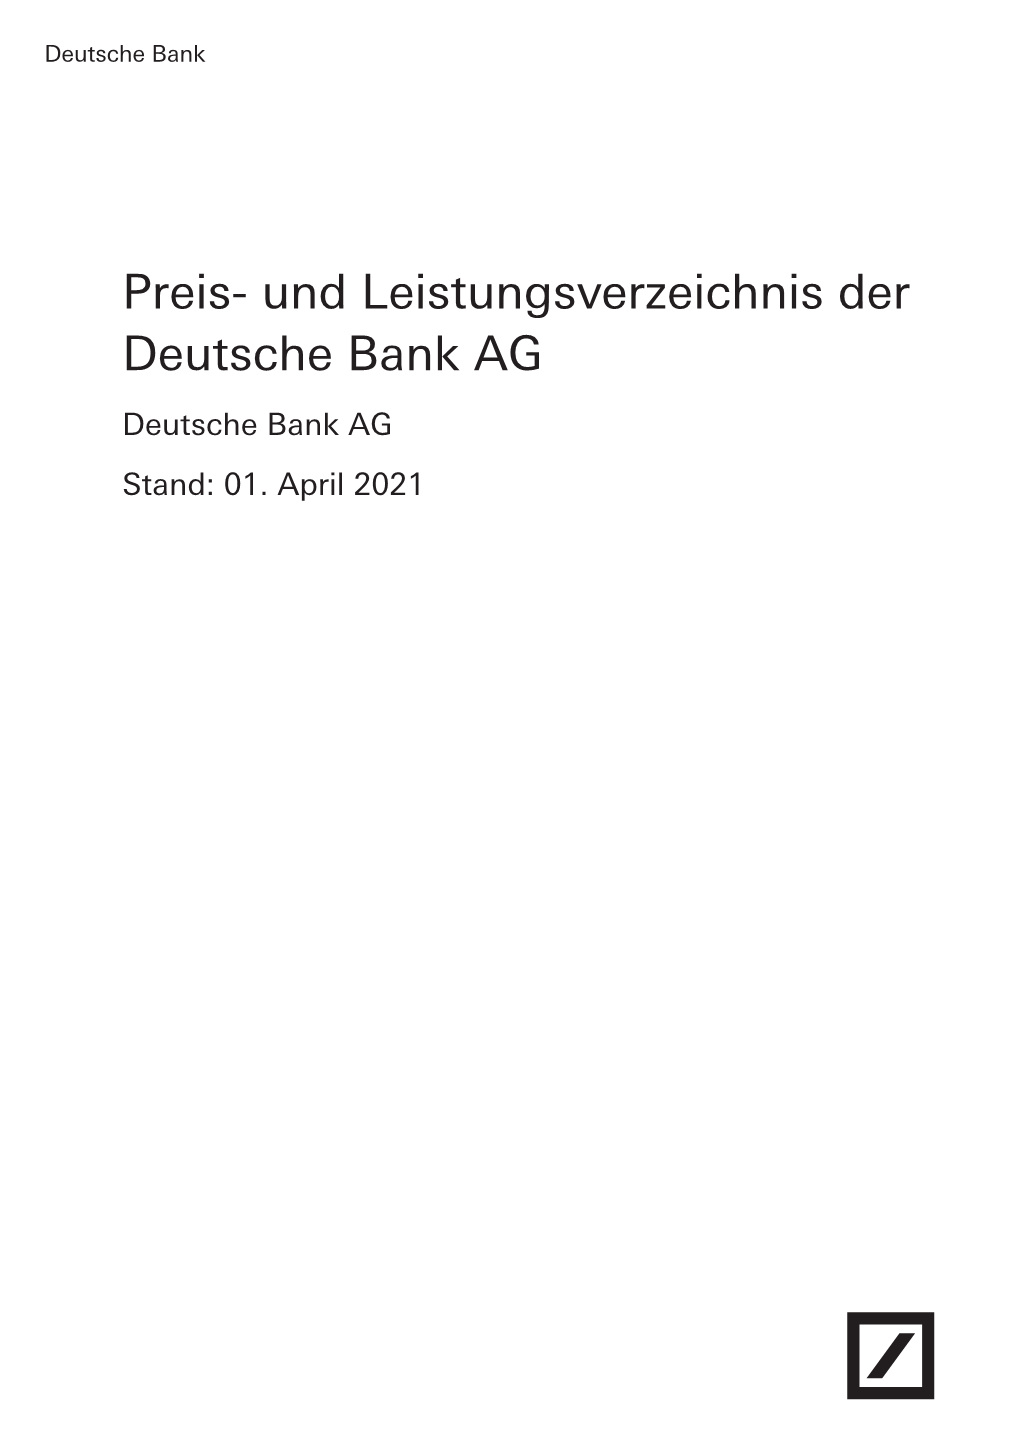 Preis- Und Leistungsverzeichnis Der Deutsche Bank AG Deutsche Bank AG Stand: 01